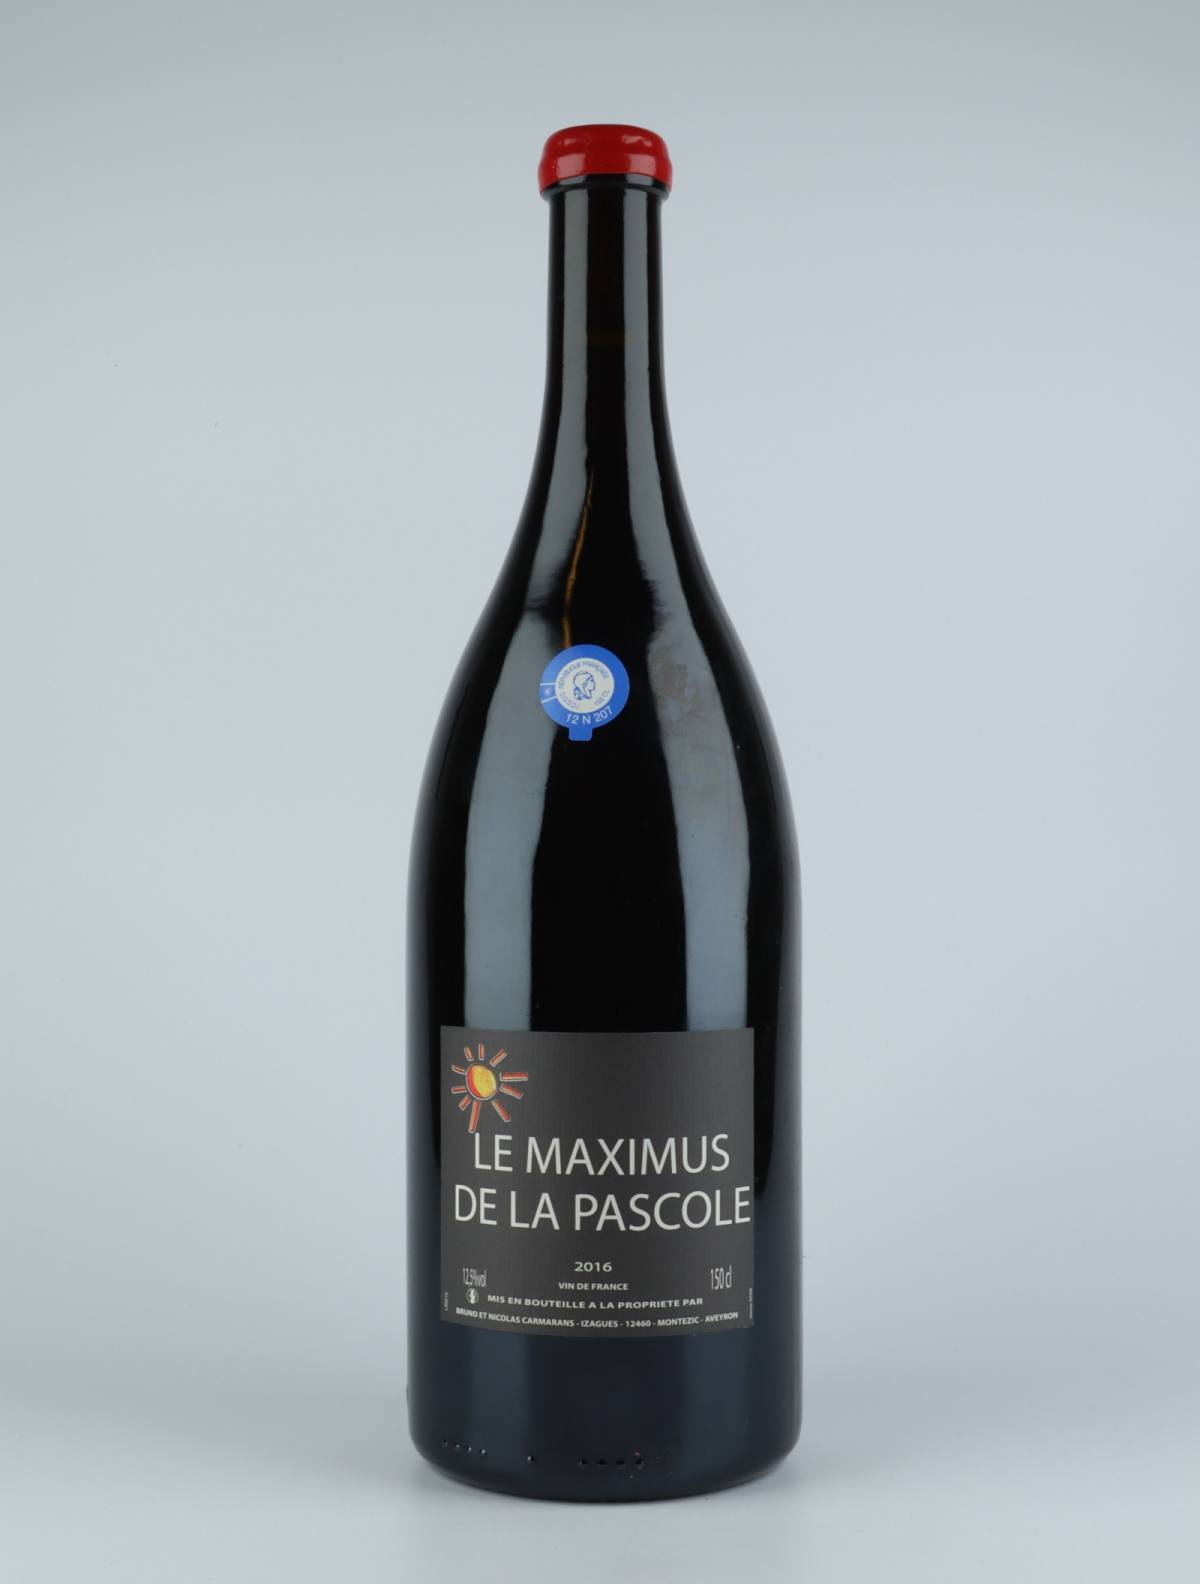 En flaske 2016 Maximus de la Pascole Rødvin fra Bruno Duchêne, Rousillon i Frankrig